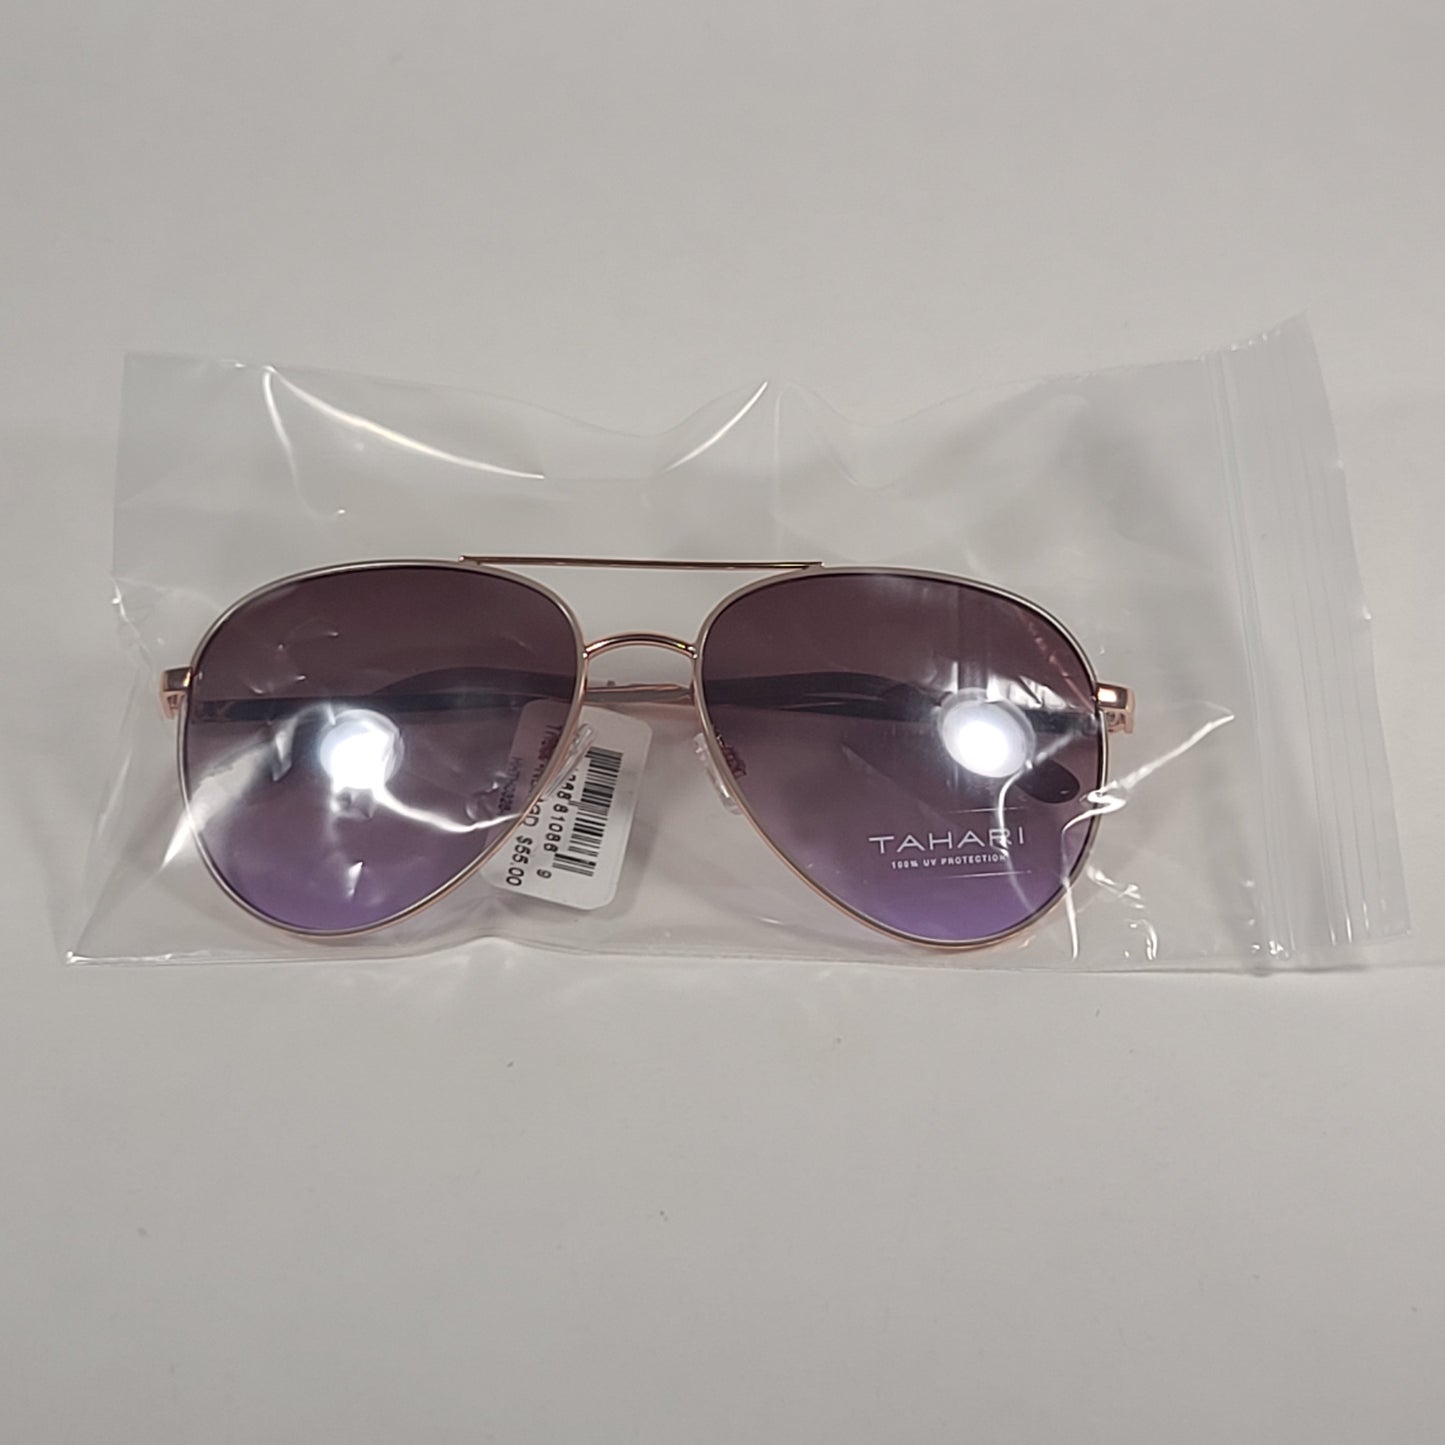 Tahari Aviator Sunglasses Rose Gold Nude Pink Brown Gradient Lens TH807 NDRGD - Sunglasses